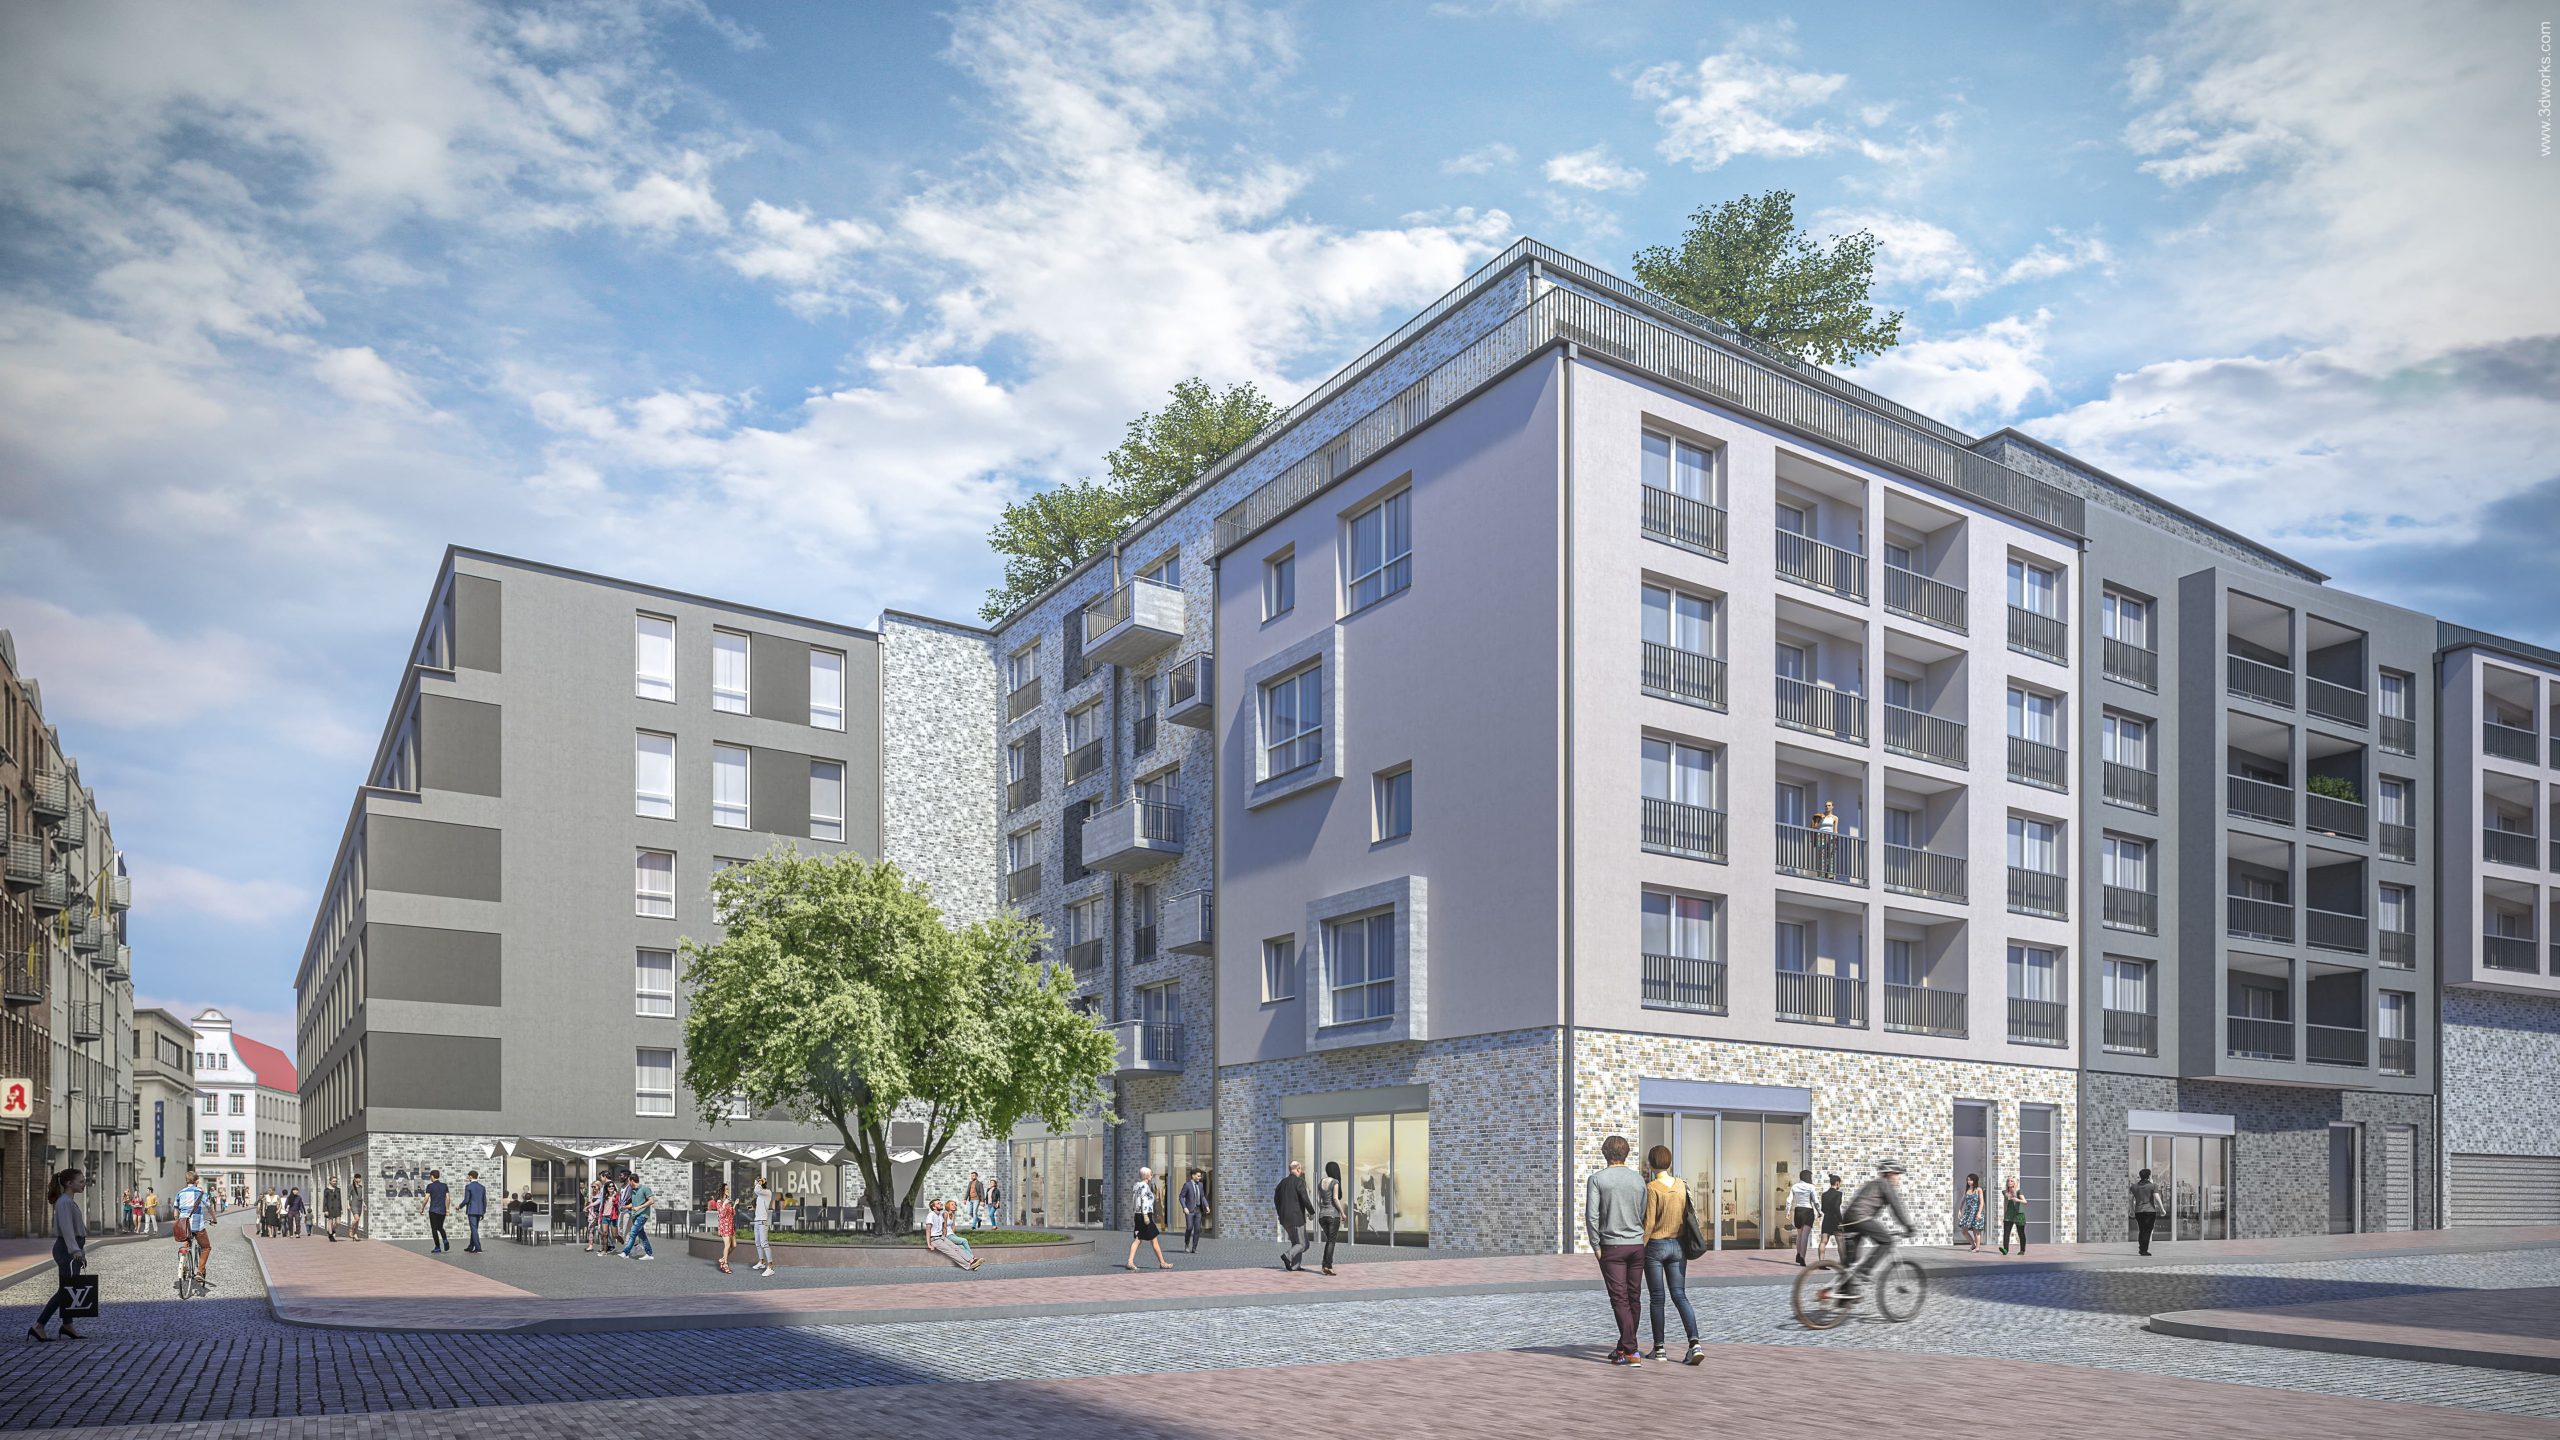 Premier Inn erweitert das Standort-Portfolio um ein 200-Zimmer-Hotel im Herzen der Hansestadt Rostock